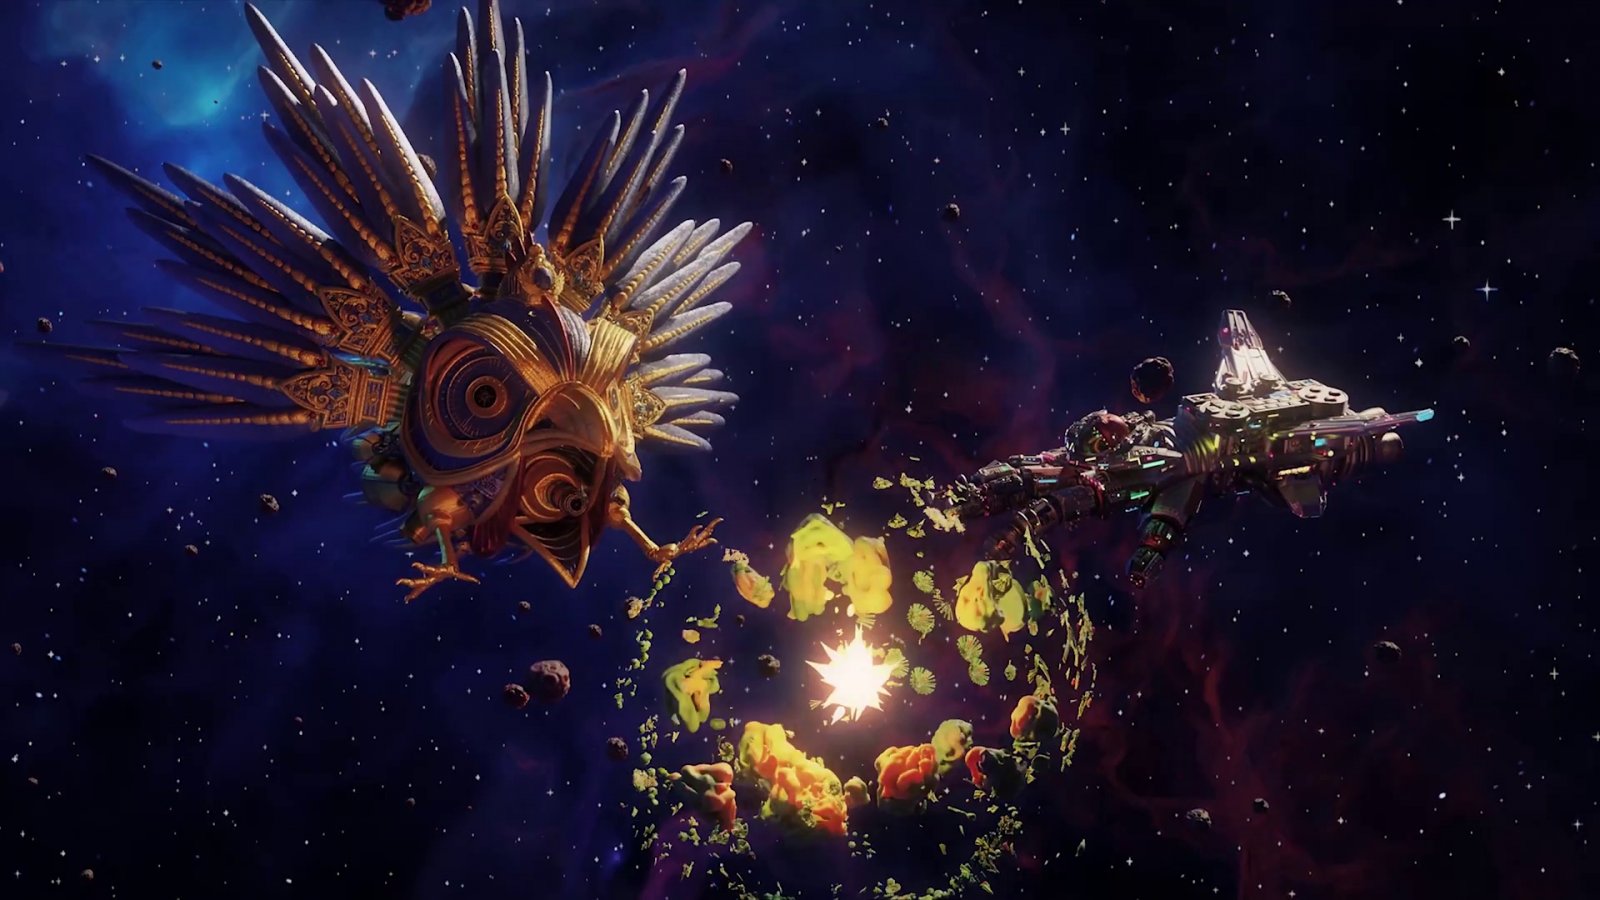 Starpets è la nuova serie Ubisoft di genere space kitsch comedy in stop motion realizzata in VR